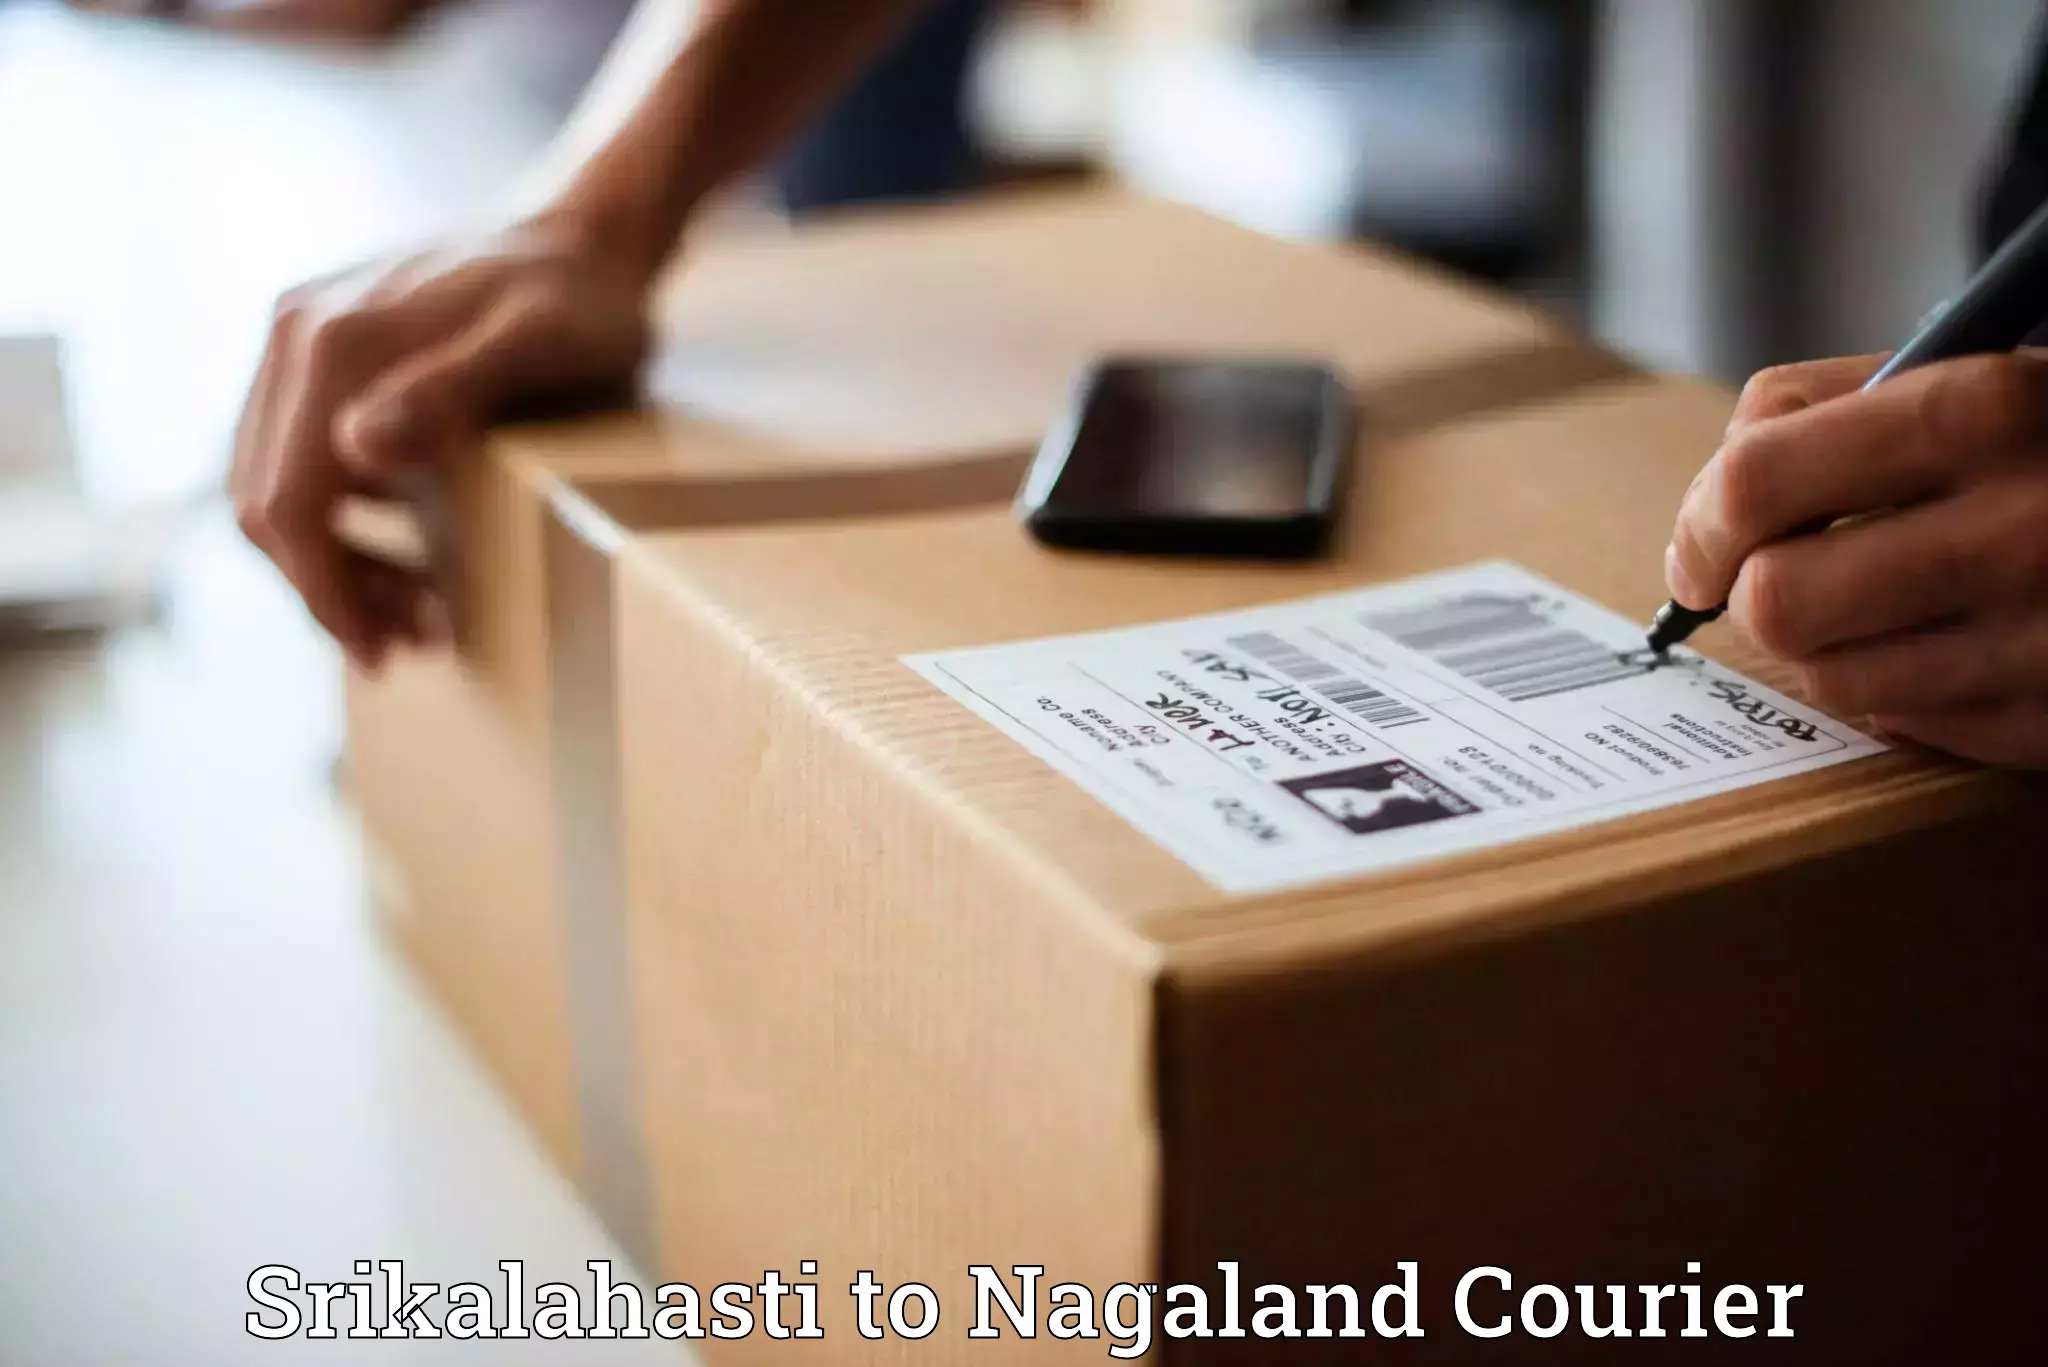 Tracking updates in Srikalahasti to Nagaland